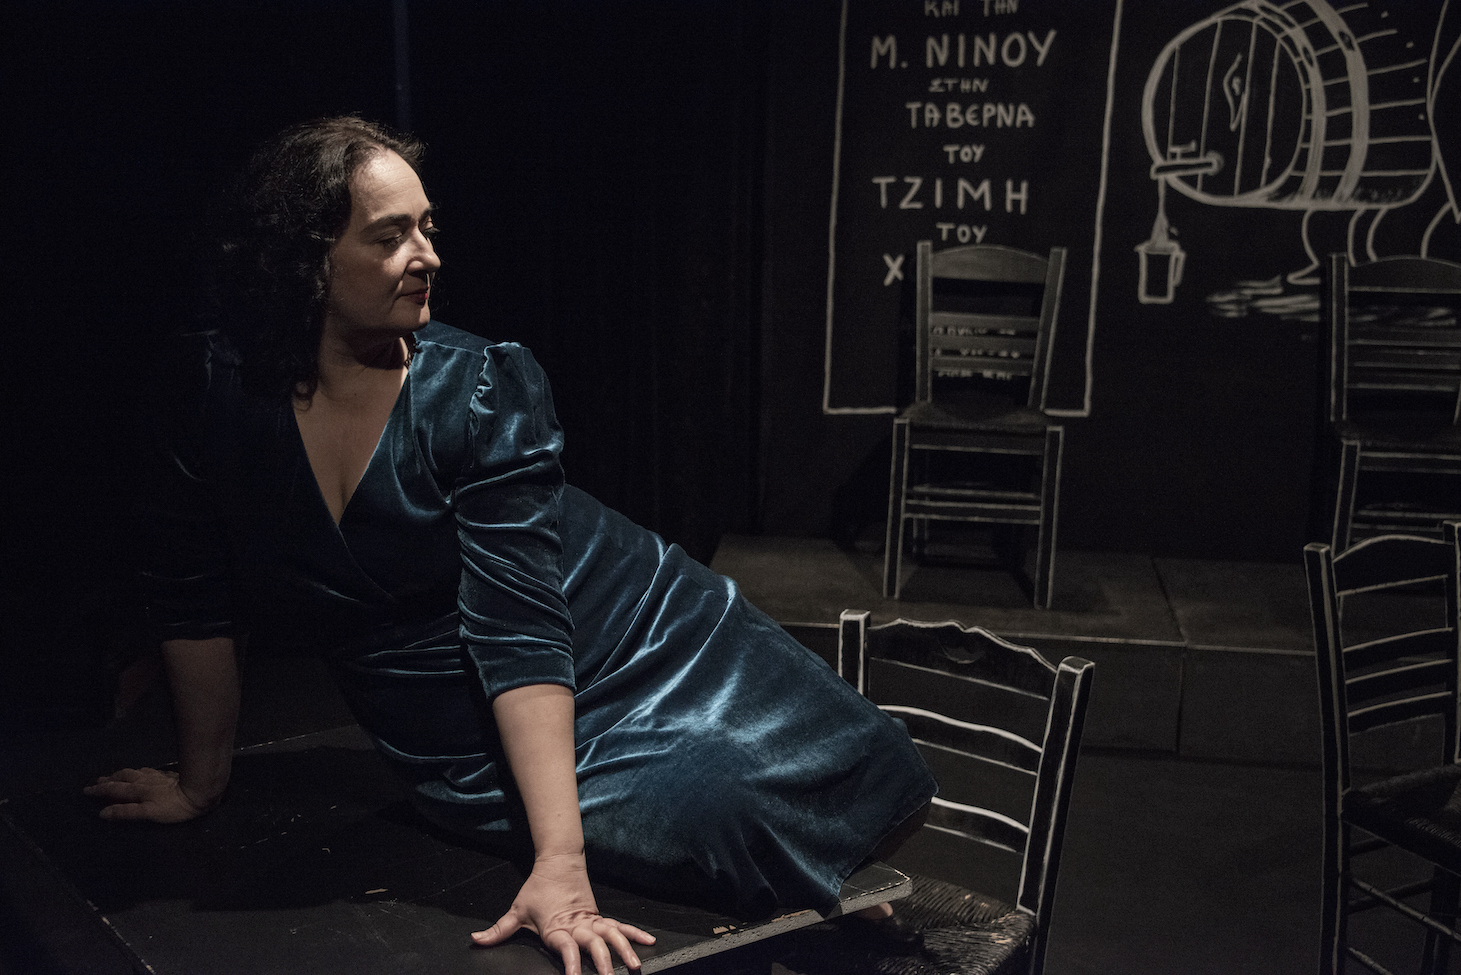 Η Ελένη Ουζουνίδου γίνεται Μαρίκα Νίνου από τον Δεκέμβριο στο θέατρο Εν Αθήναις